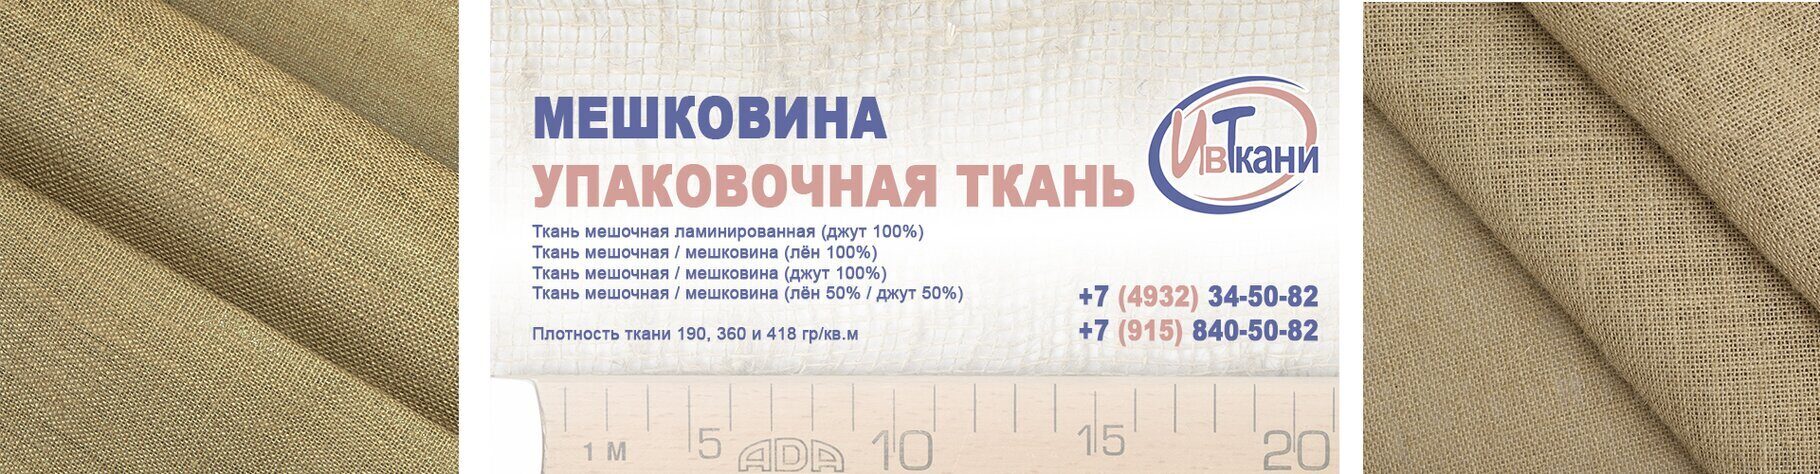 Ткани оптом - предложений в Иваново, сравнить цены и купить